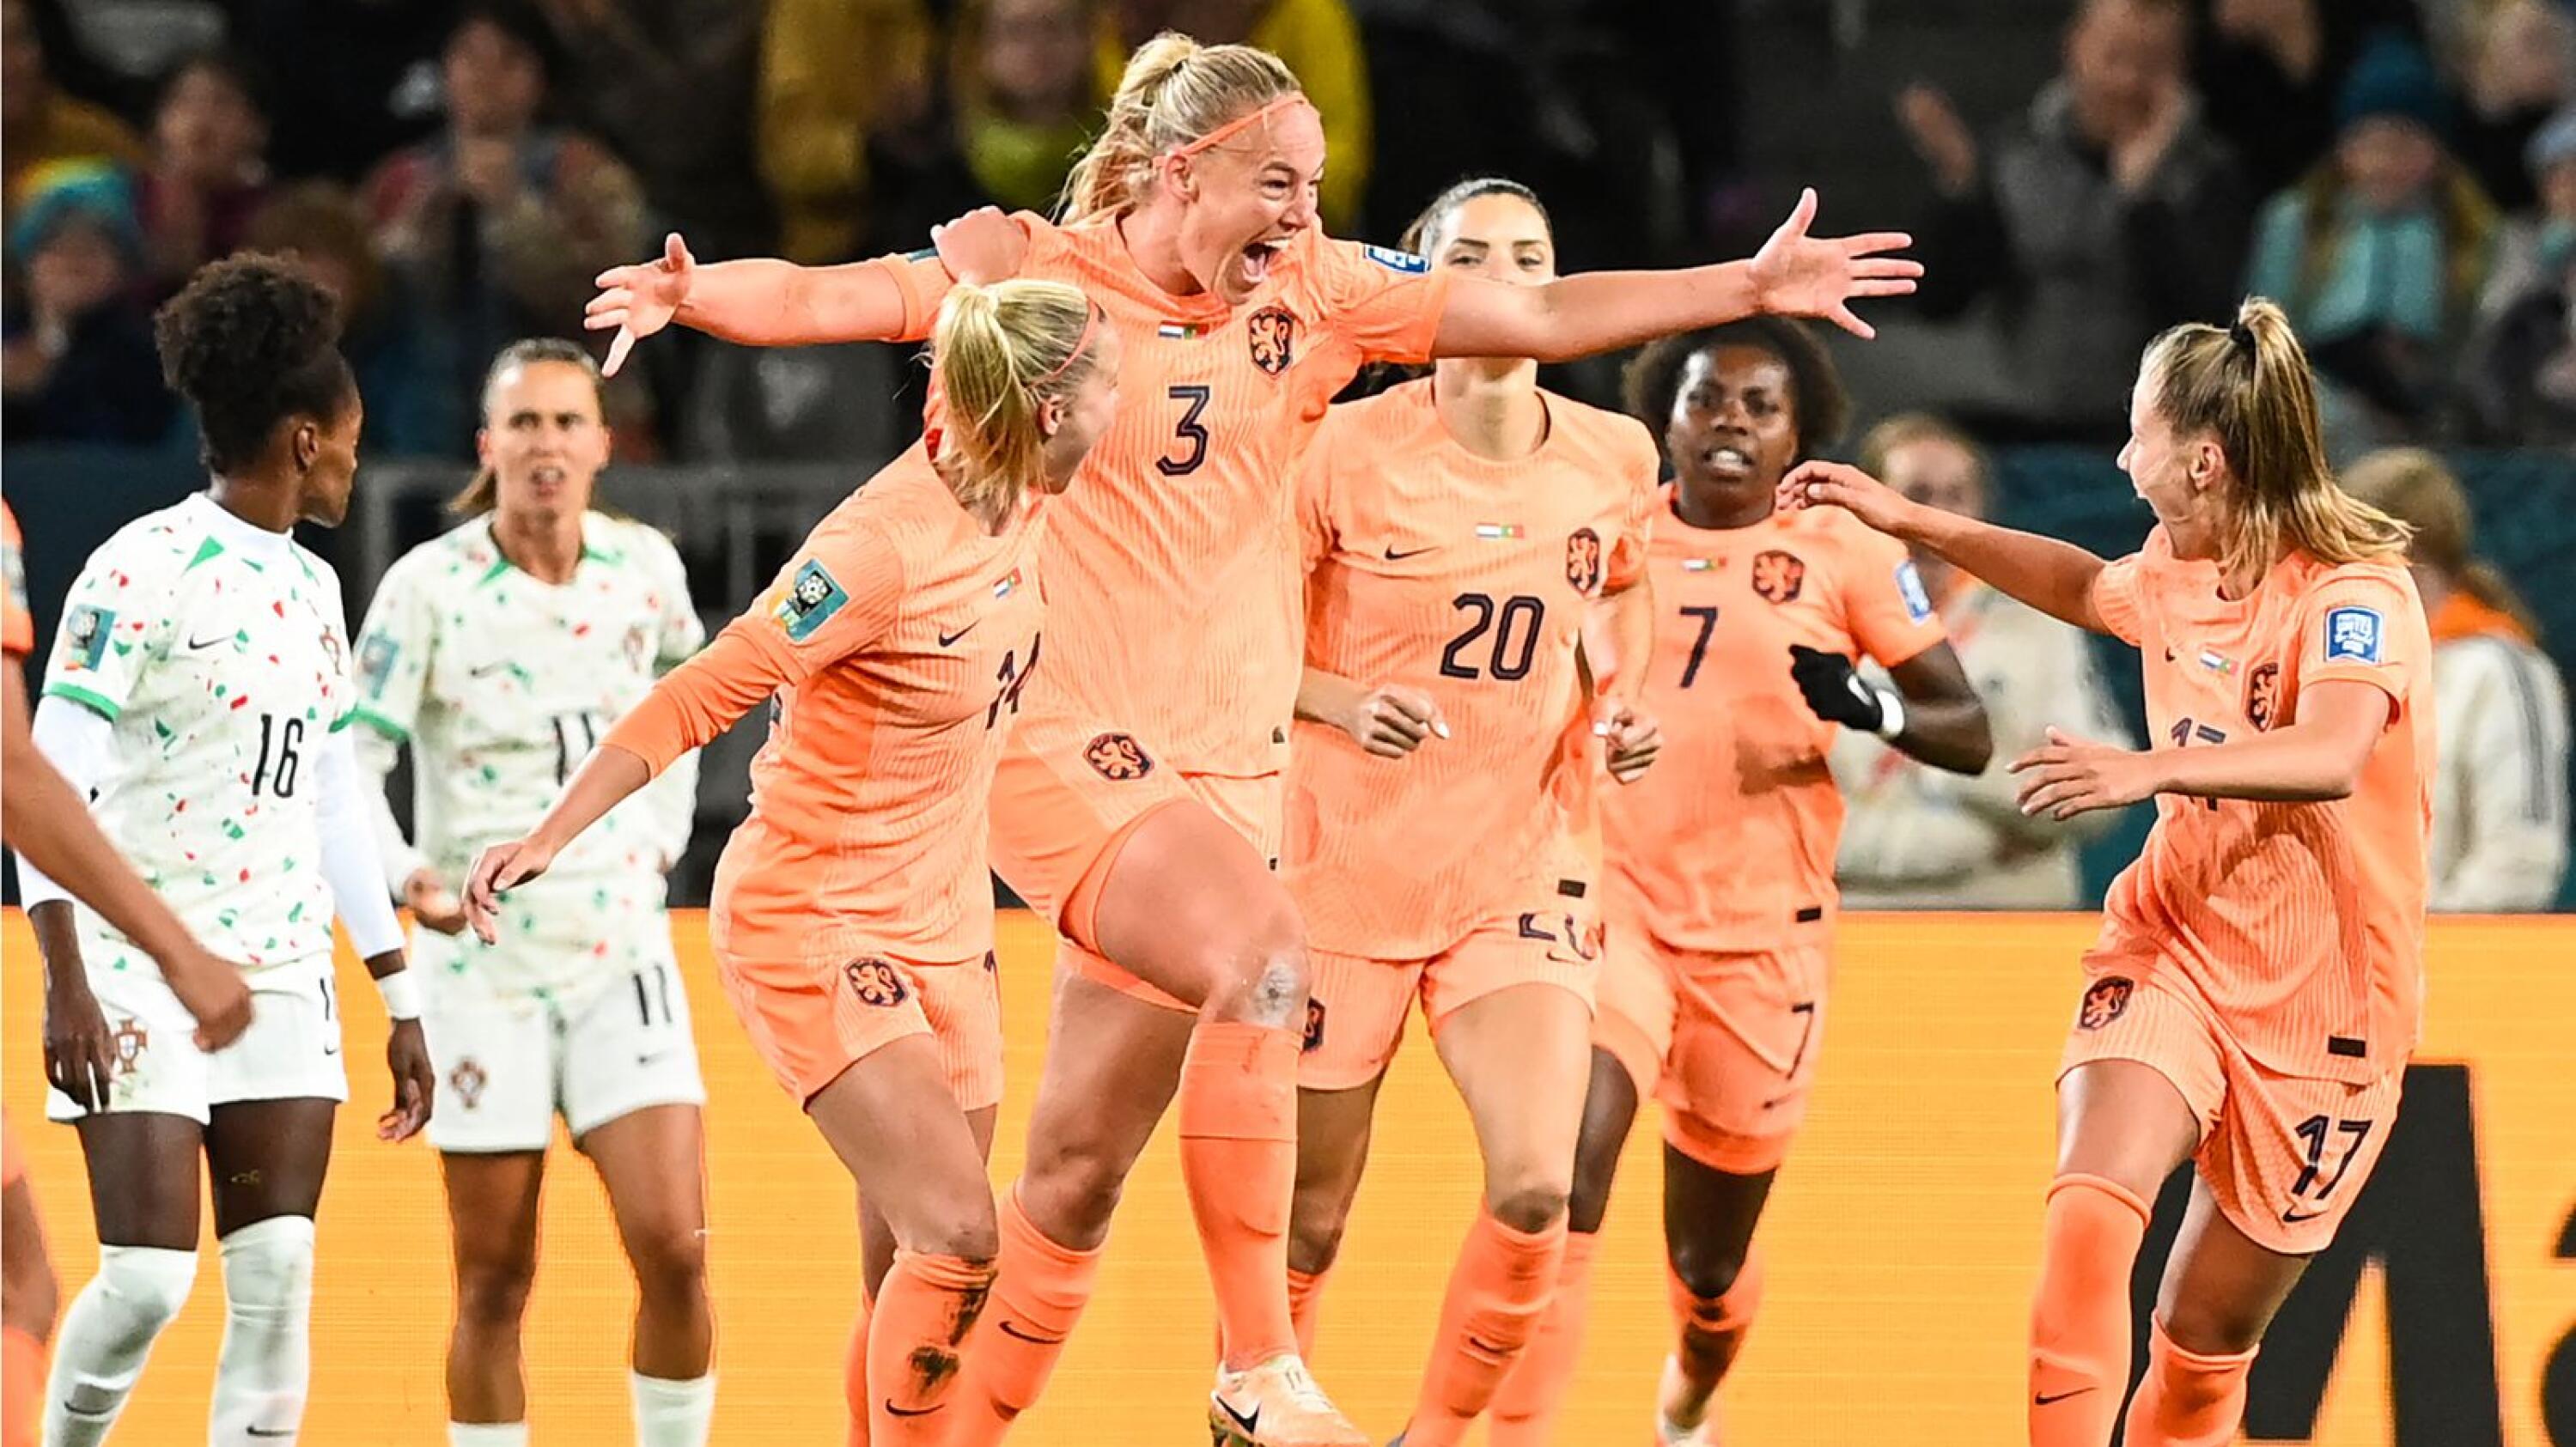 Netherlands' defender Stefanie van der Gragt celebrates with her teammates after scoring her team's first goal